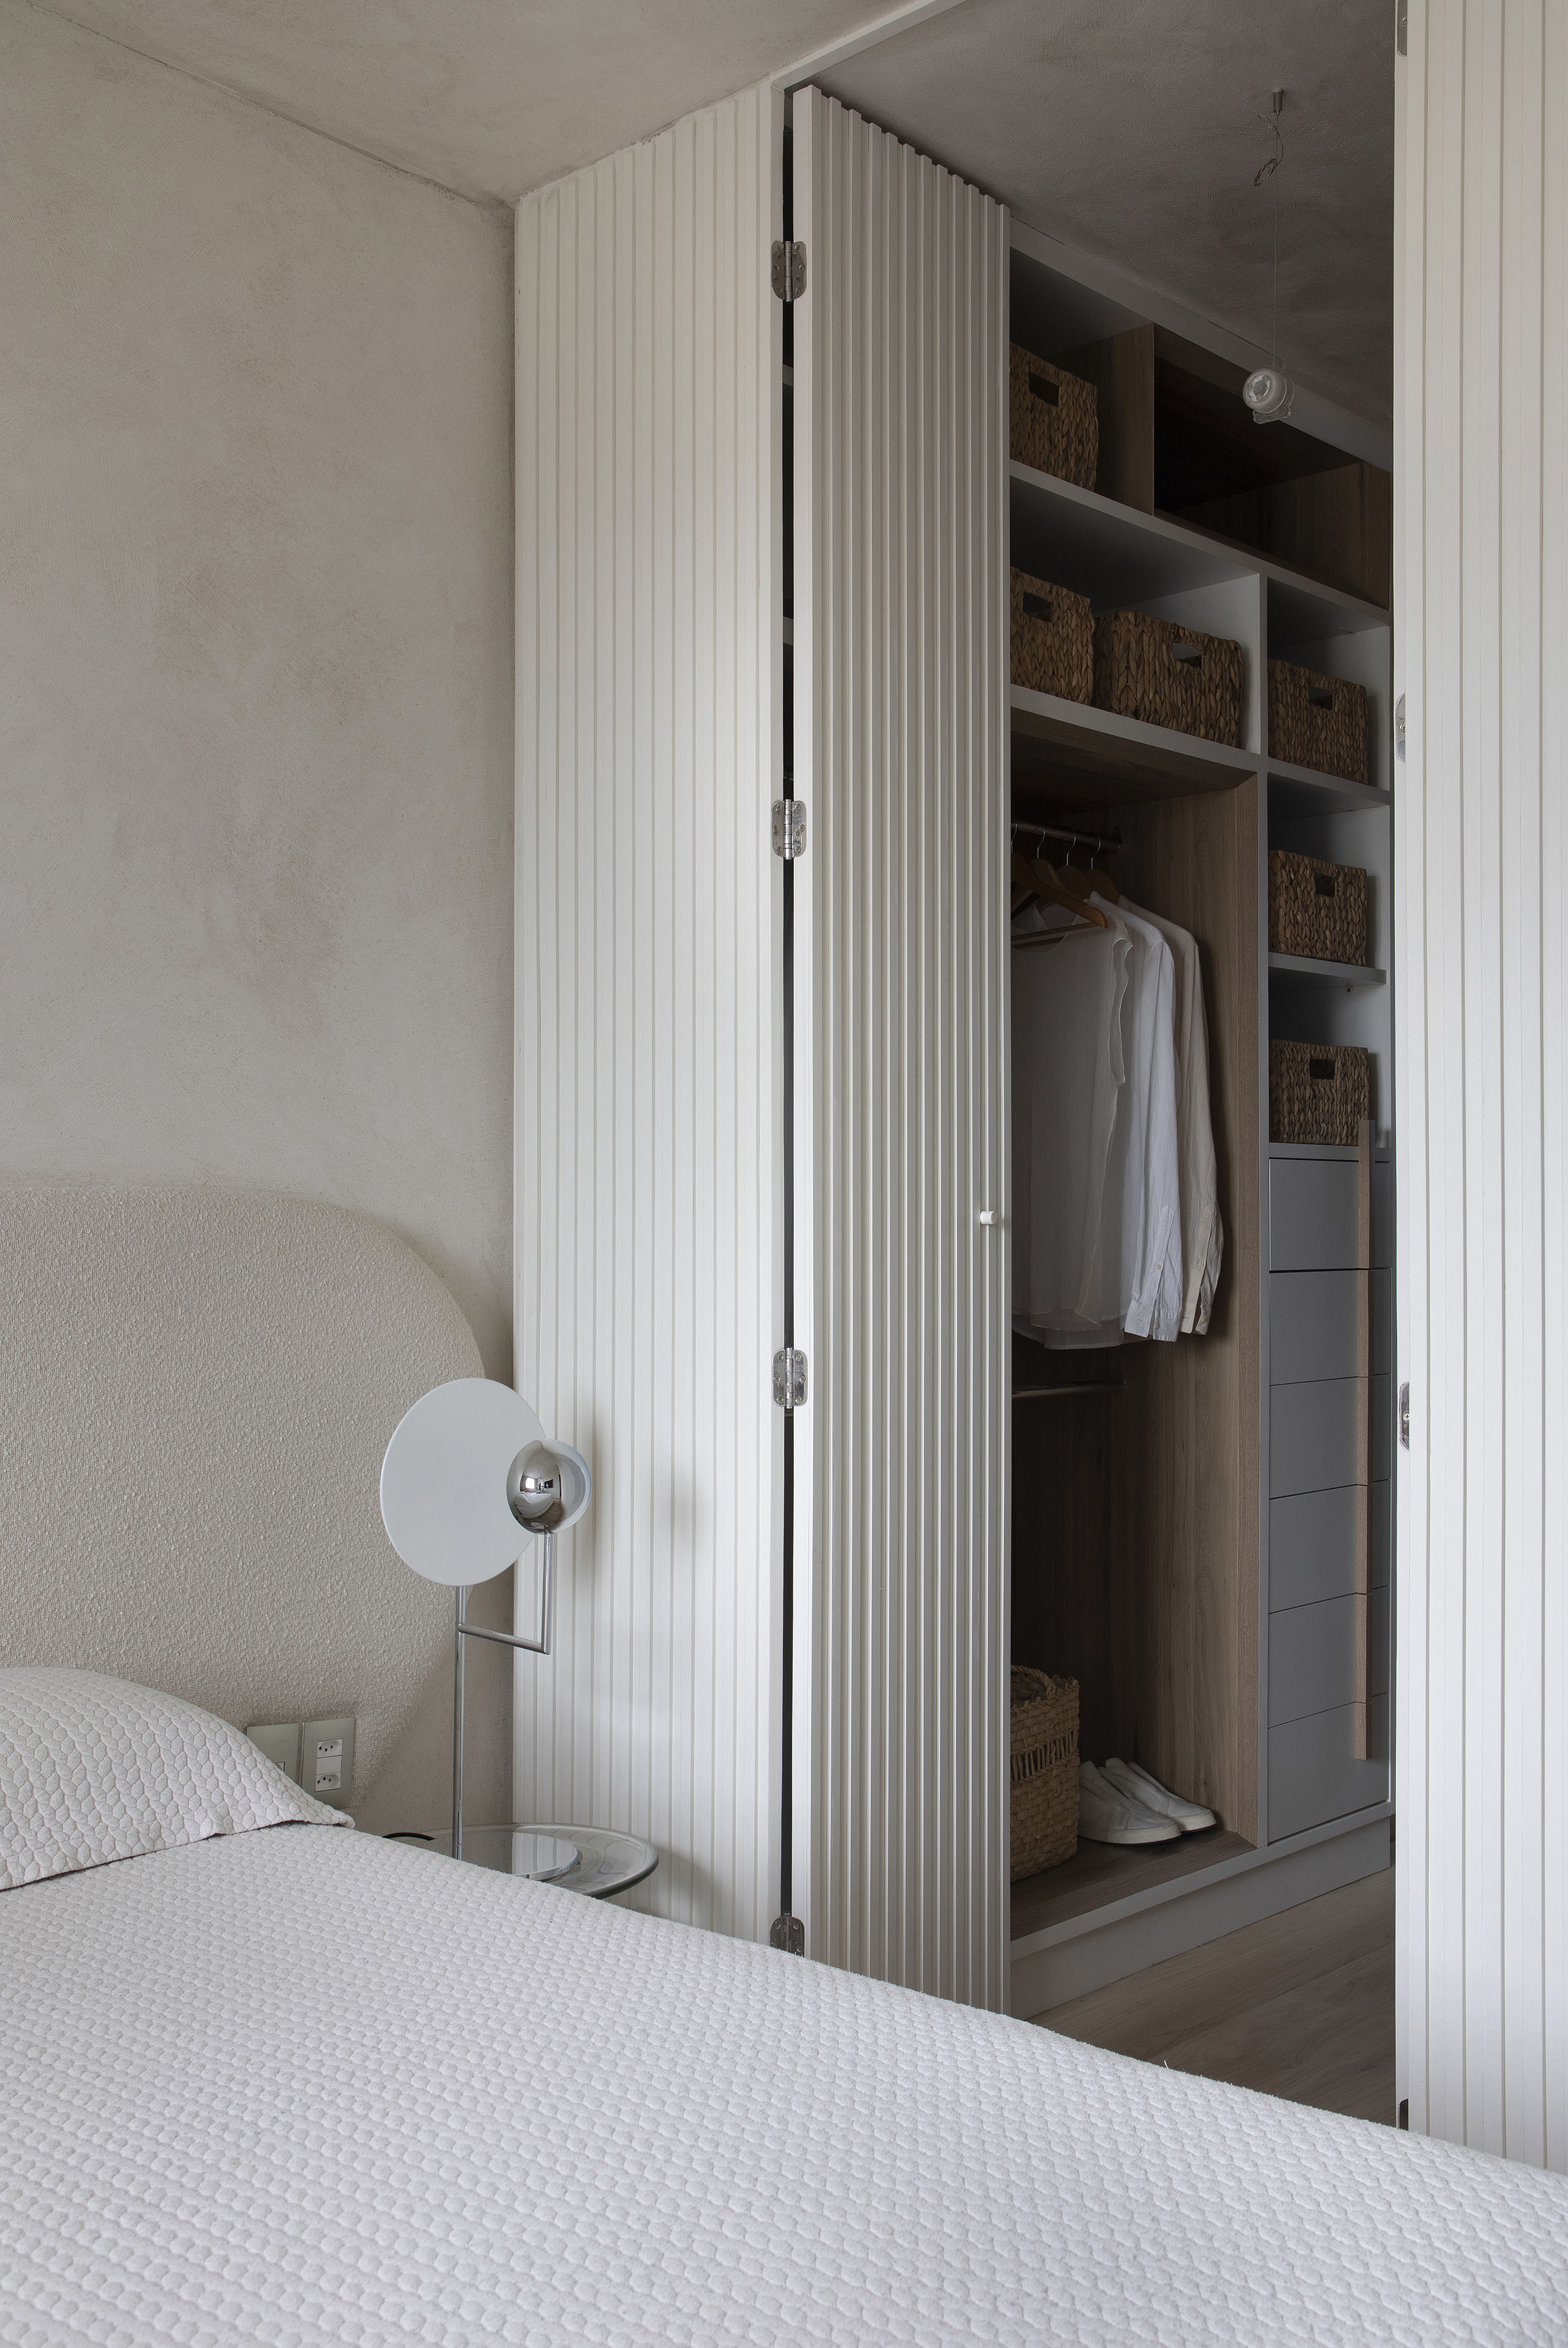 Projeto de Roby Macedo. Na foto, quarto branco com cama de casal e armário com porta de madeira branca ripada.